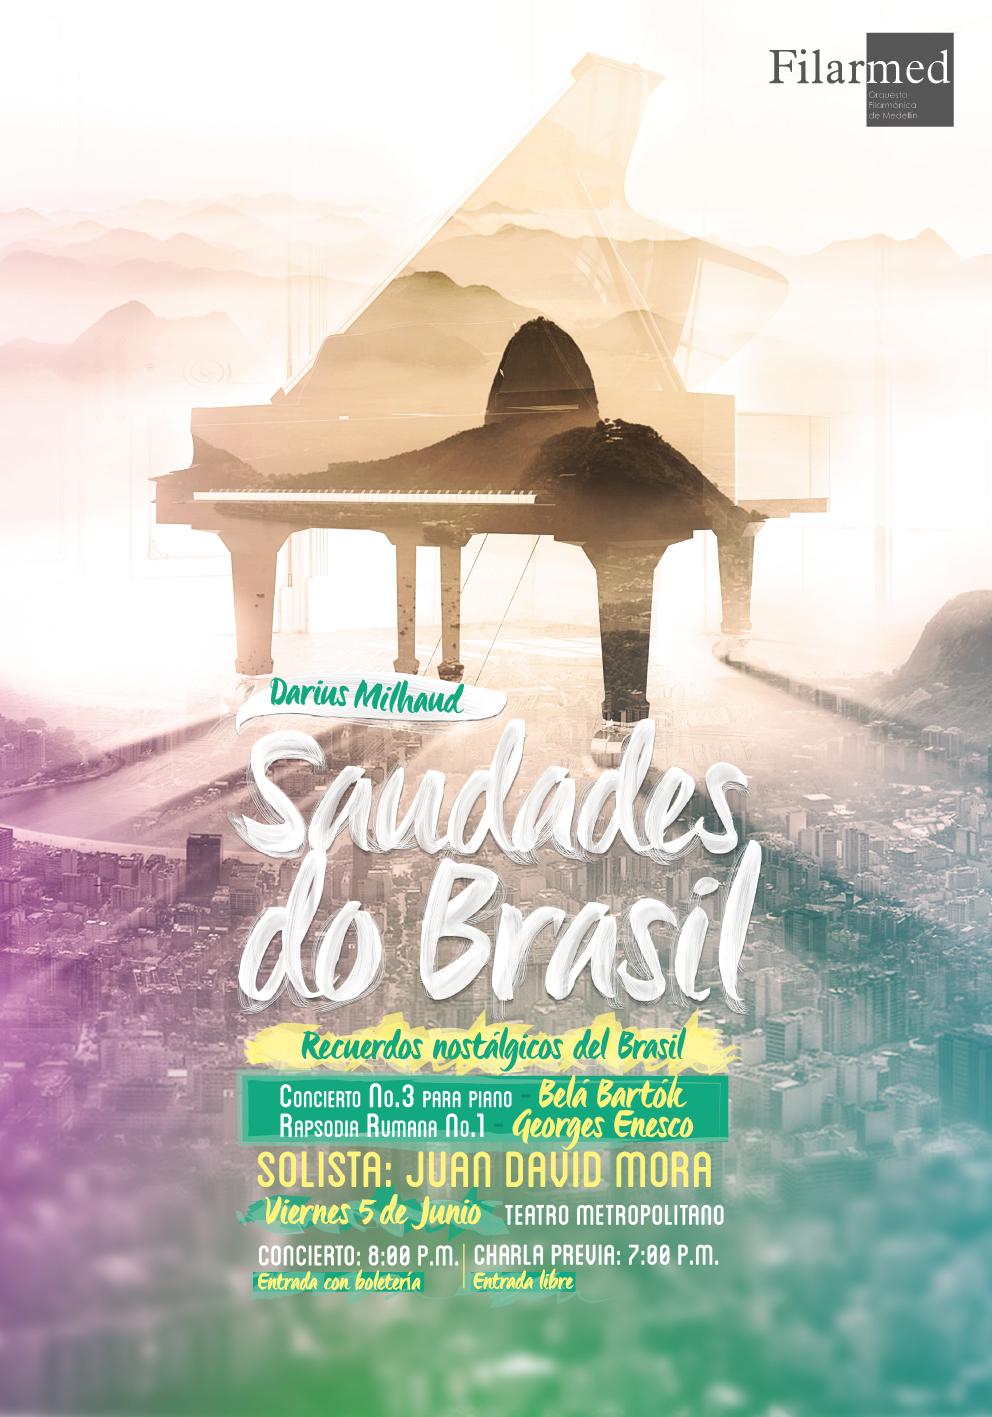 medellin mozart Brasil poster teatro FILARMED Filarmonica beethoven symphonic witch fiddle